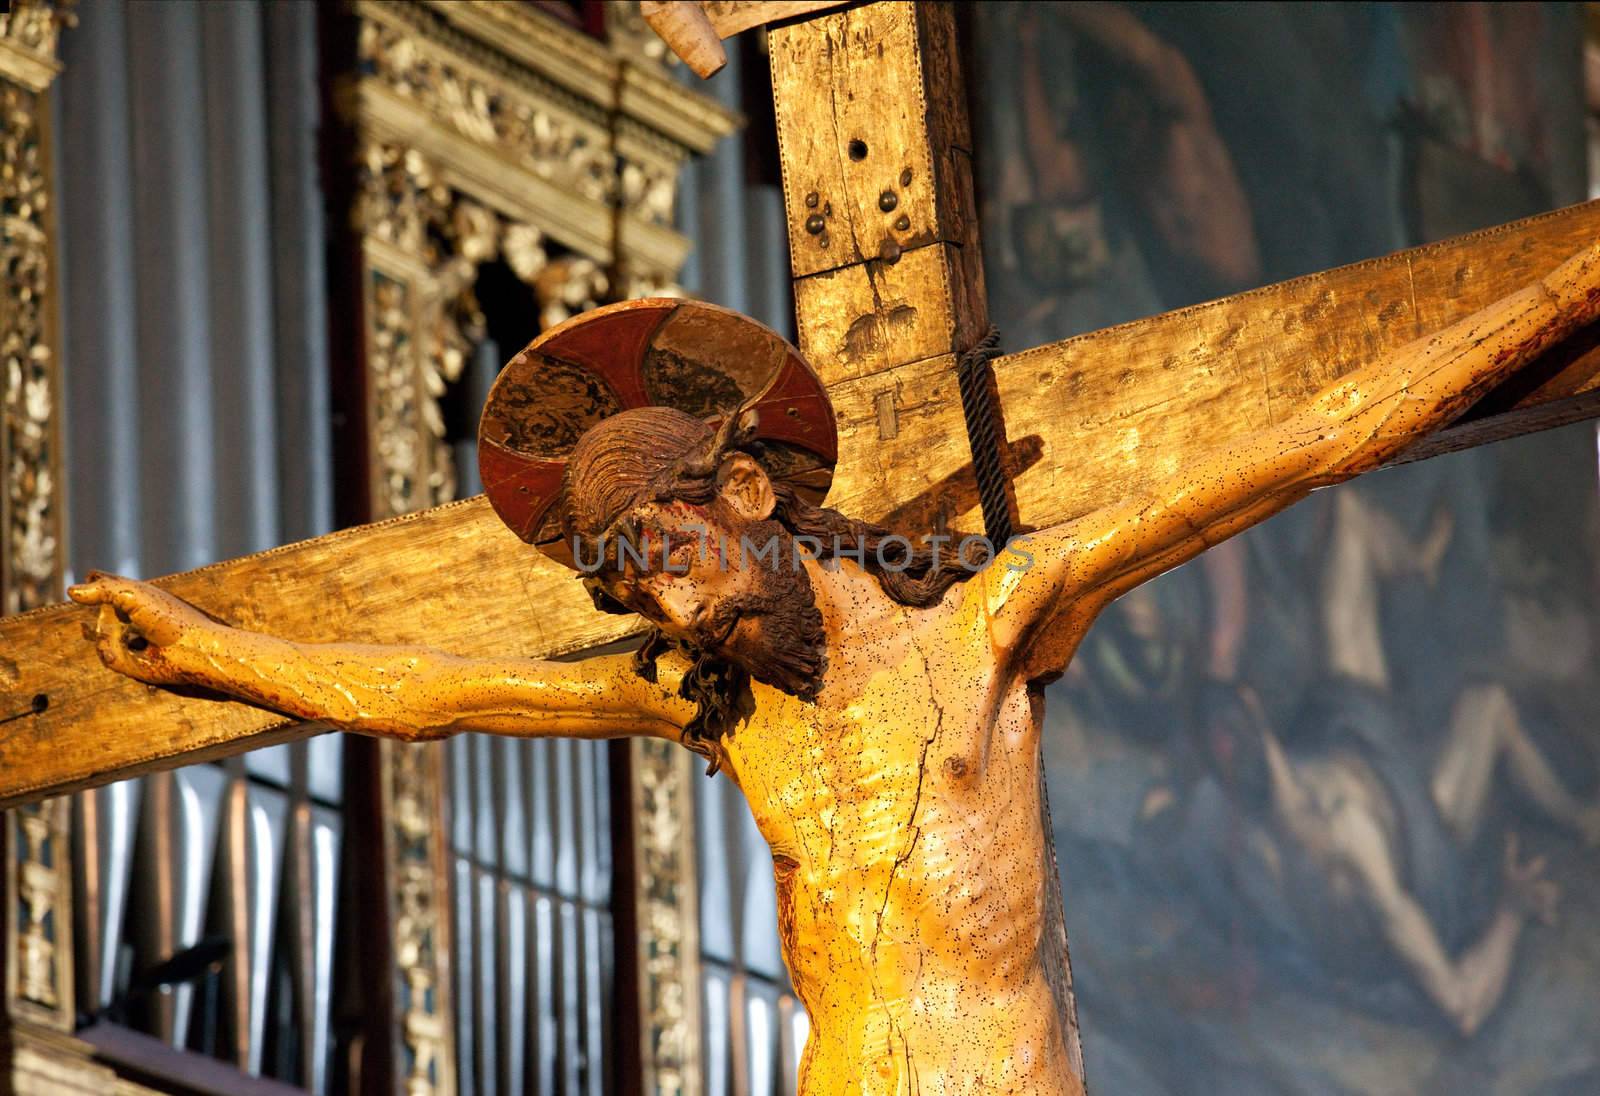 Jesus on cross by steheap